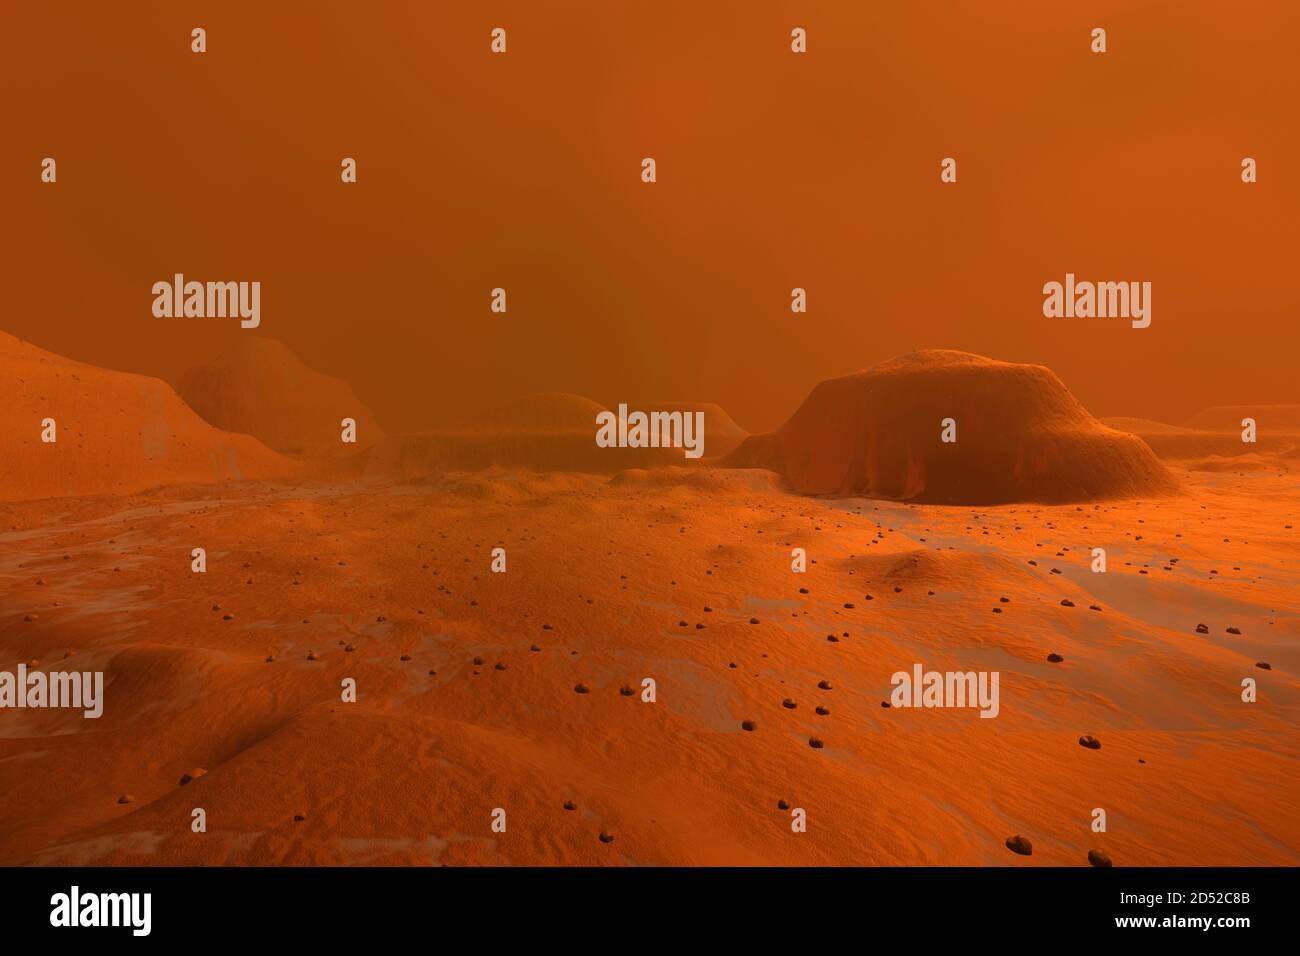 Ilustración 3D de un paisaje en el planeta Marte. Foto de stock